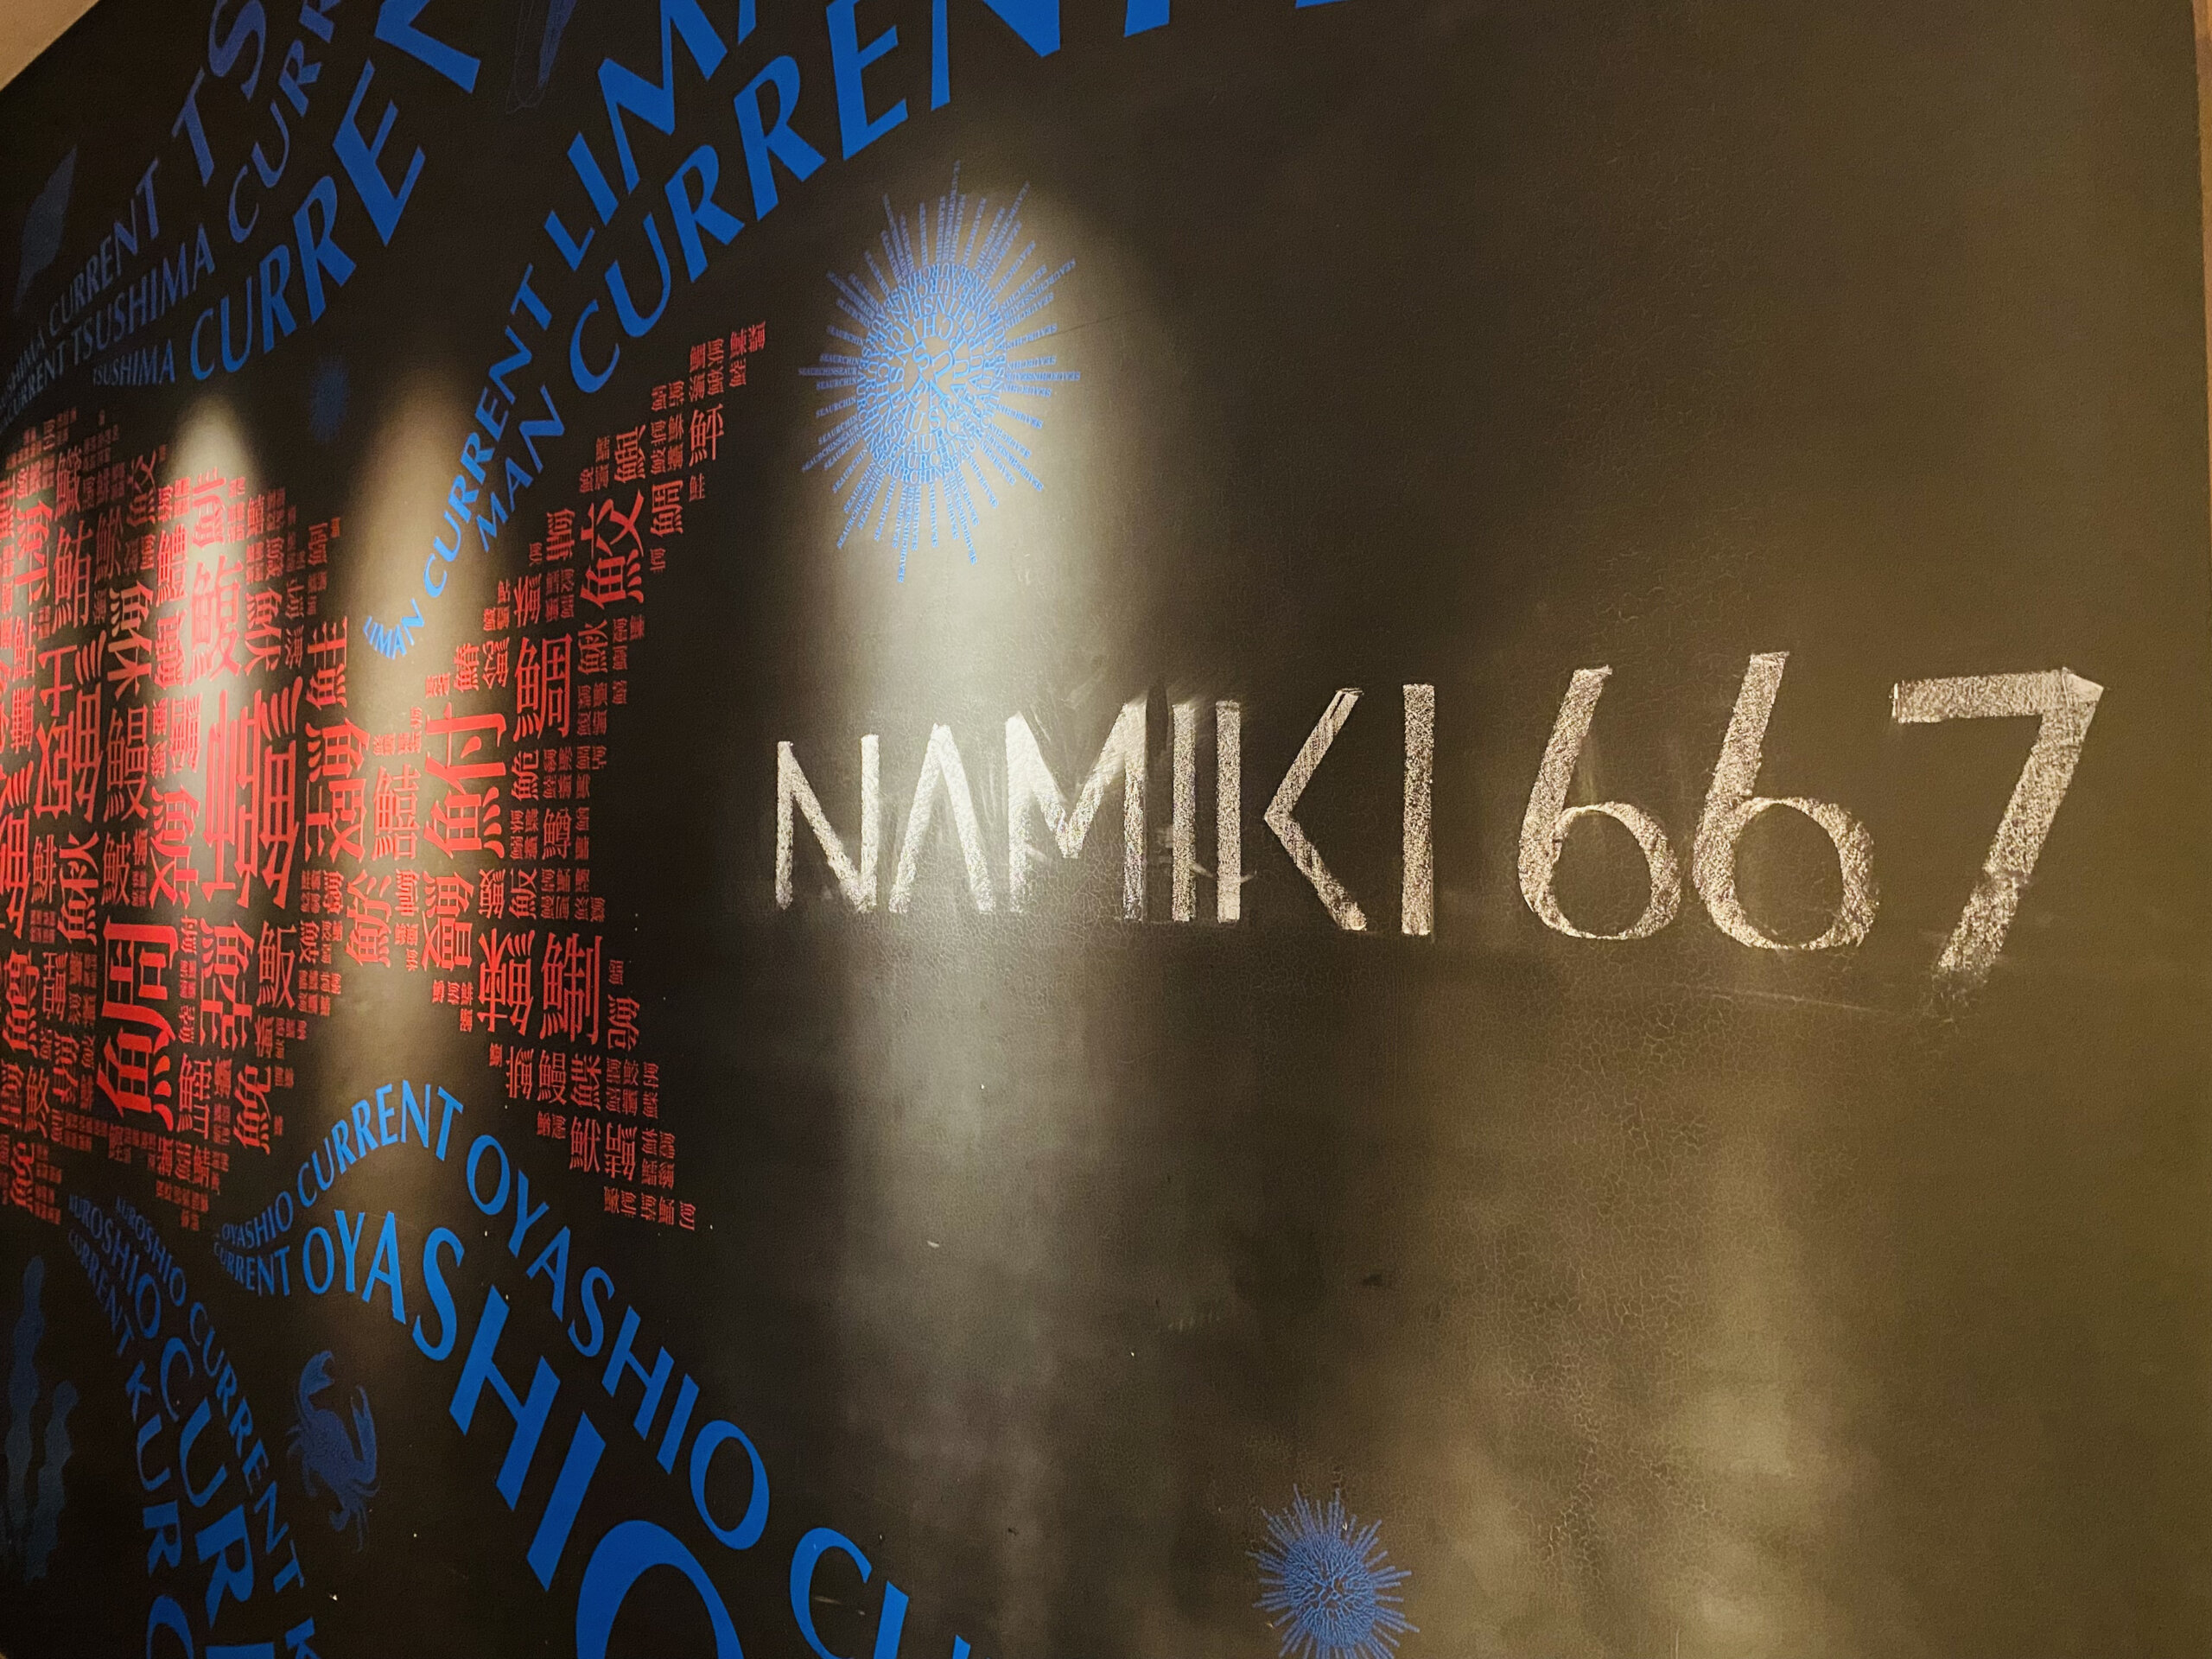 NAMIKI 667